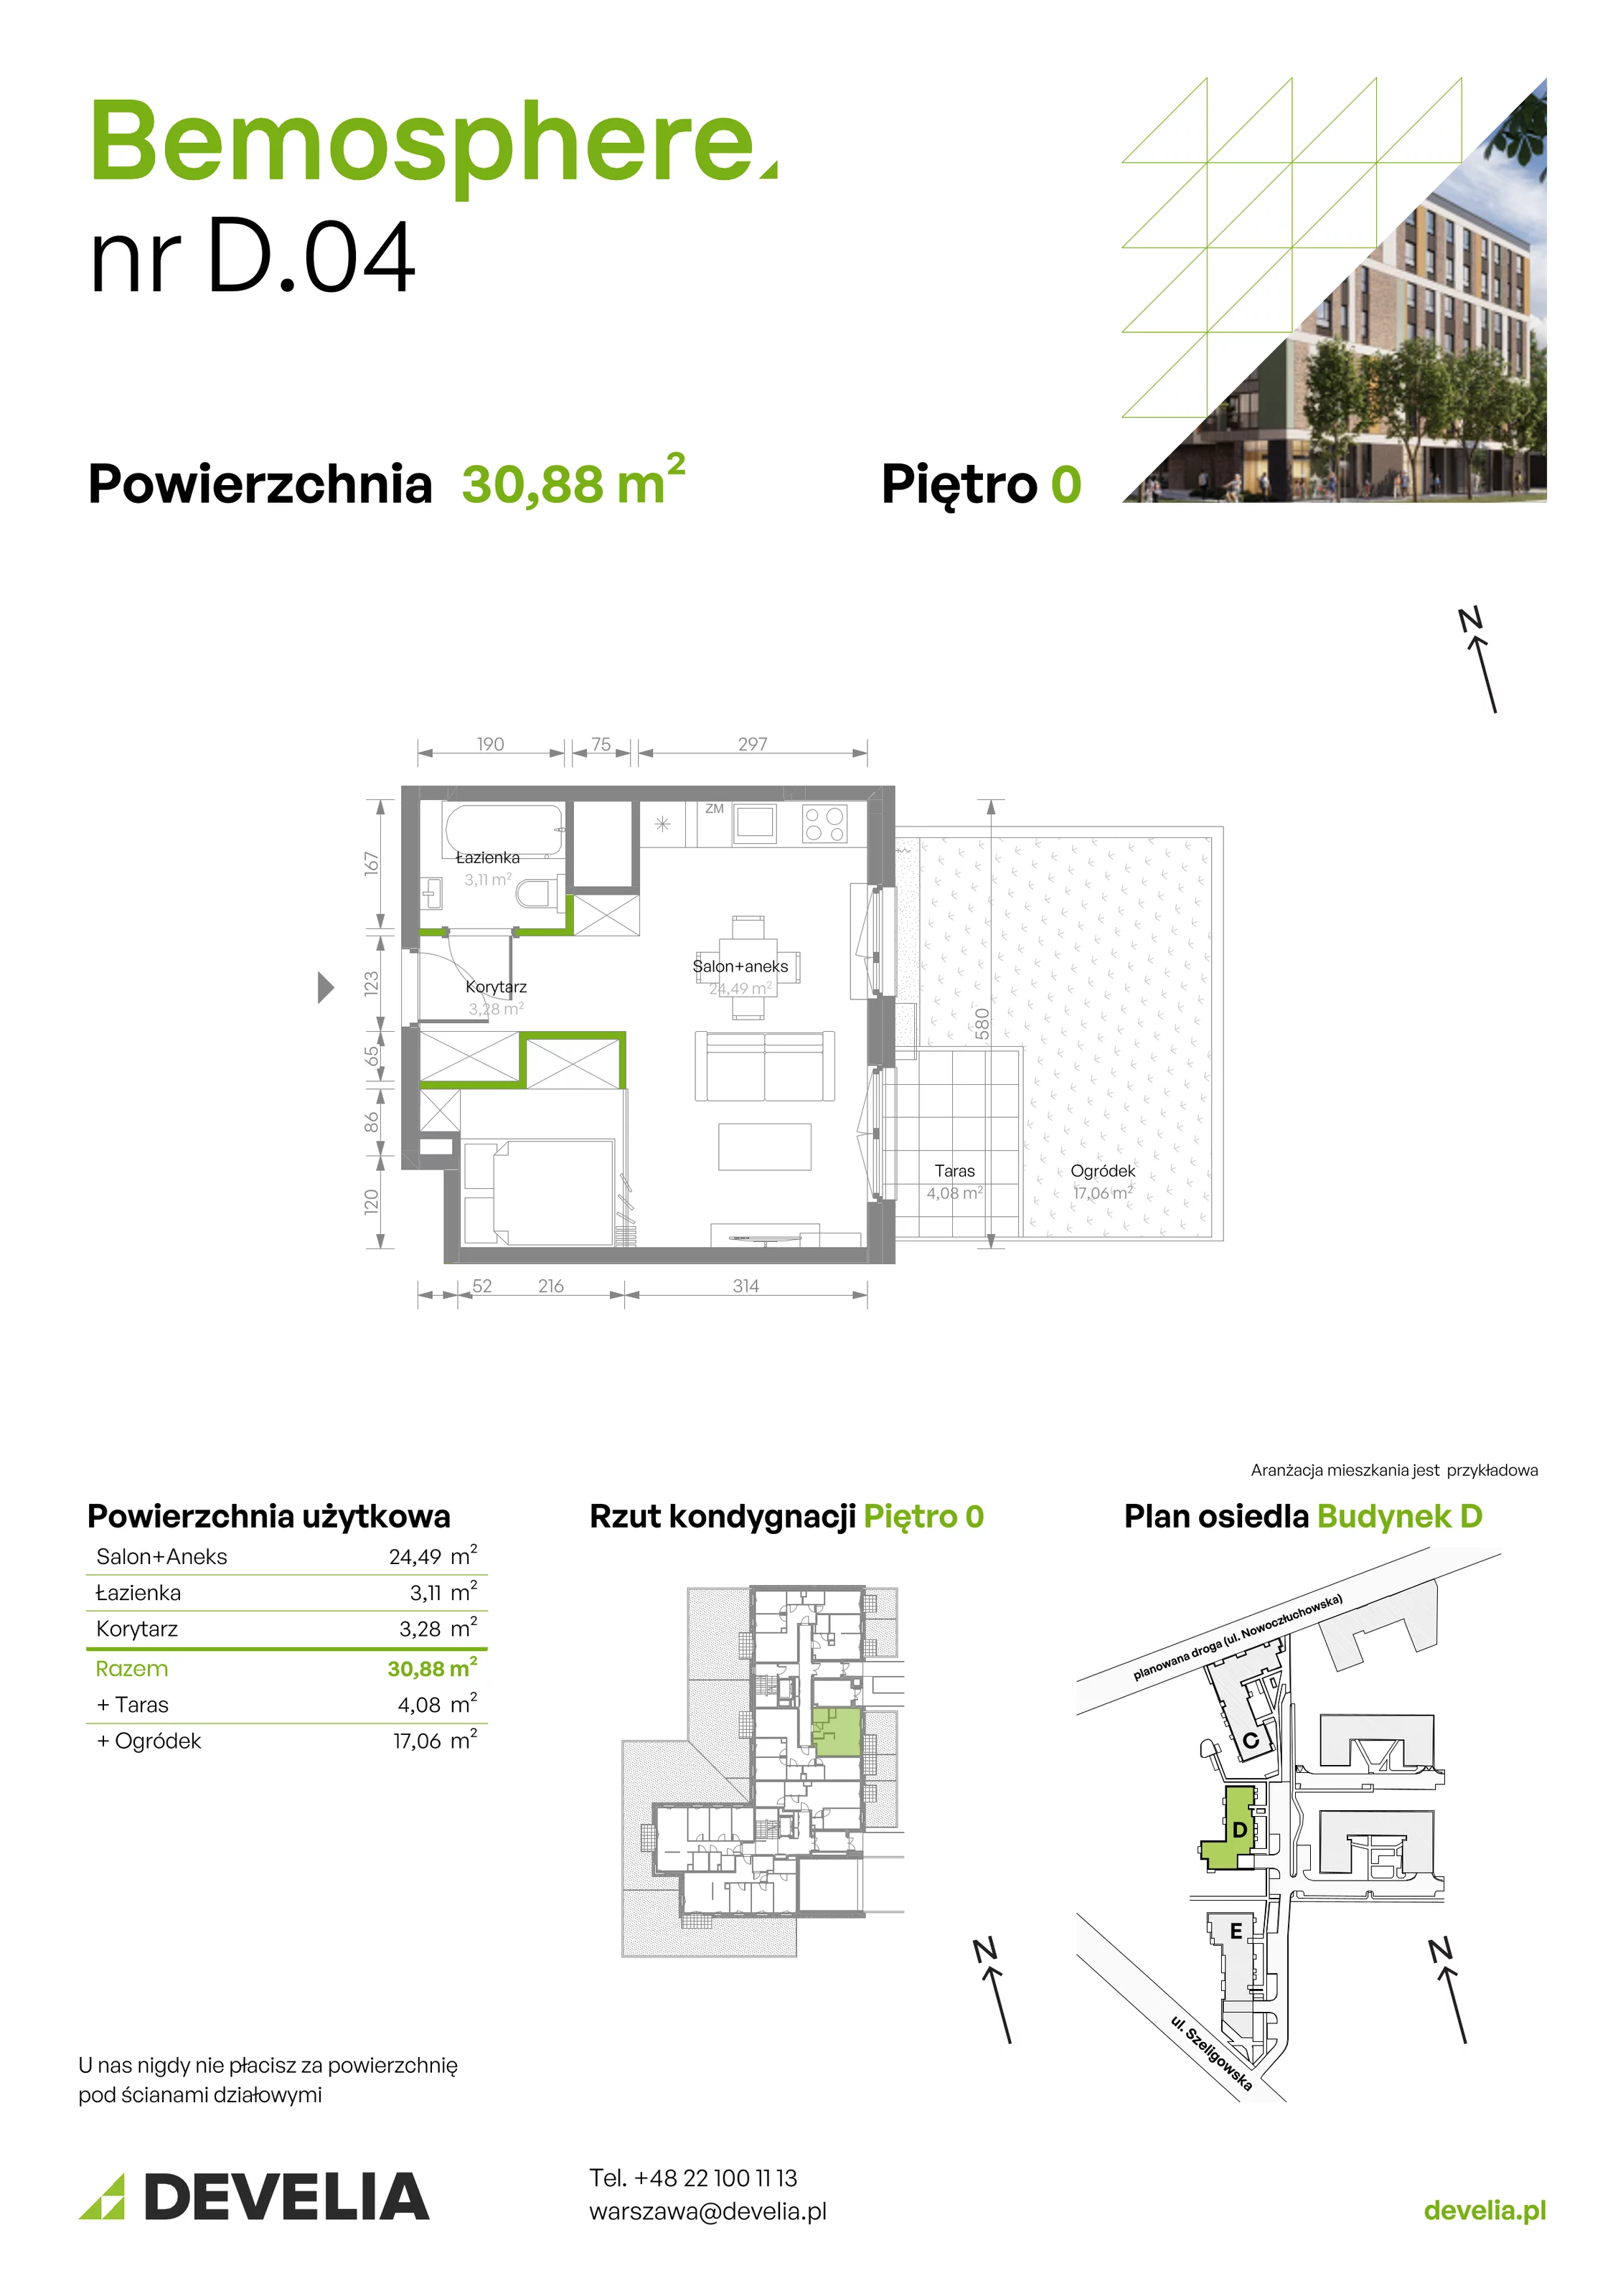 Mieszkanie 30,88 m², parter, oferta nr D/004, Bemosphere, Warszawa, Bemowo, Chrzanów, ul. Szeligowska 24